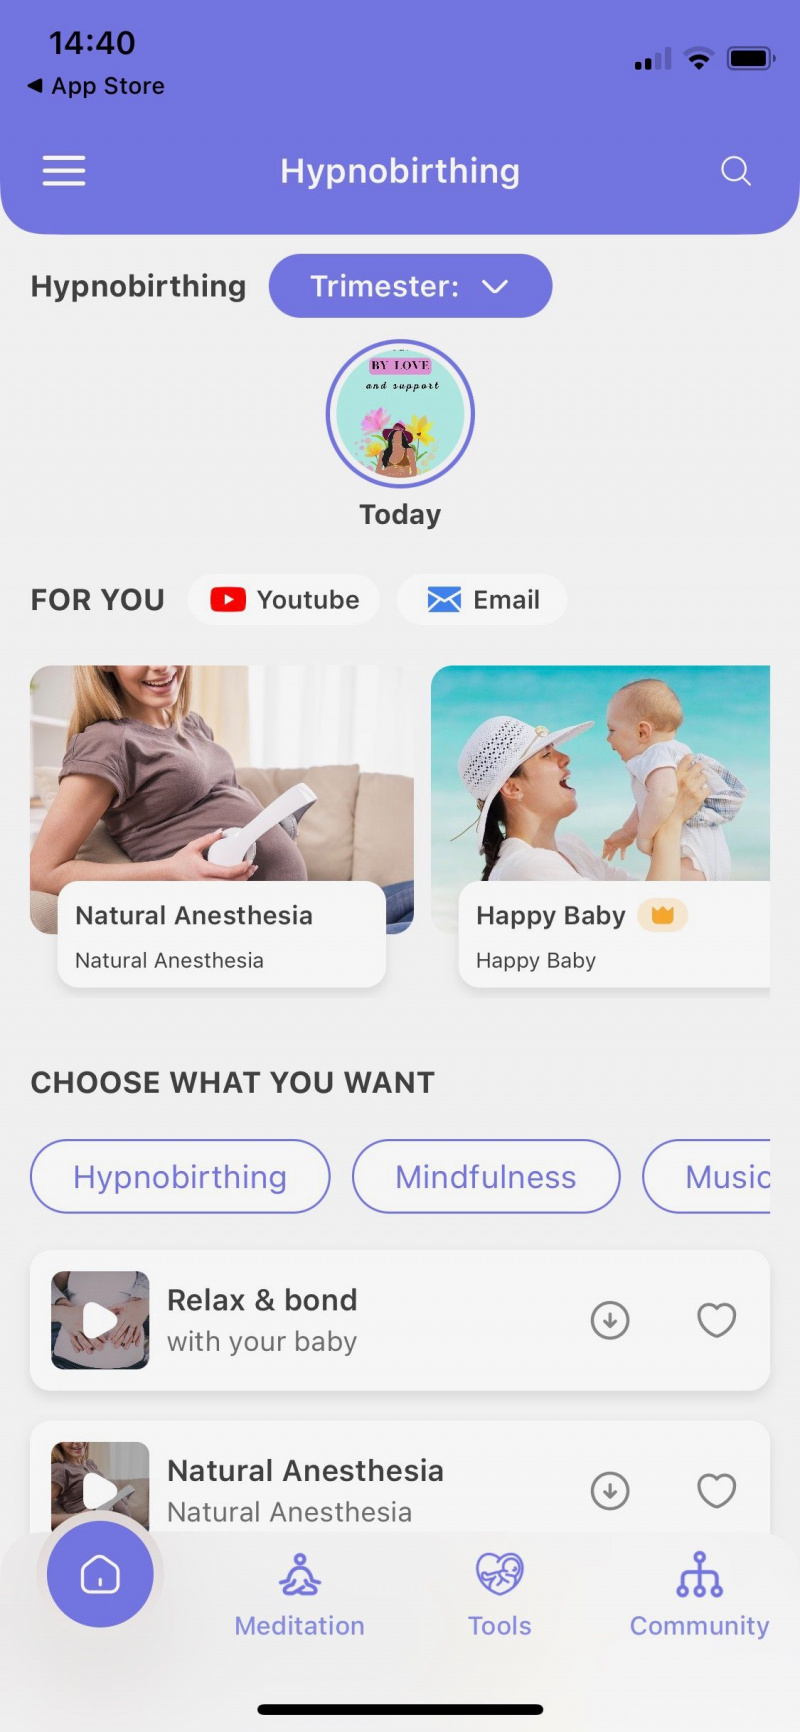   Captura de tela do aplicativo Hypnobirth fit gravidez mostrando a tela inicial